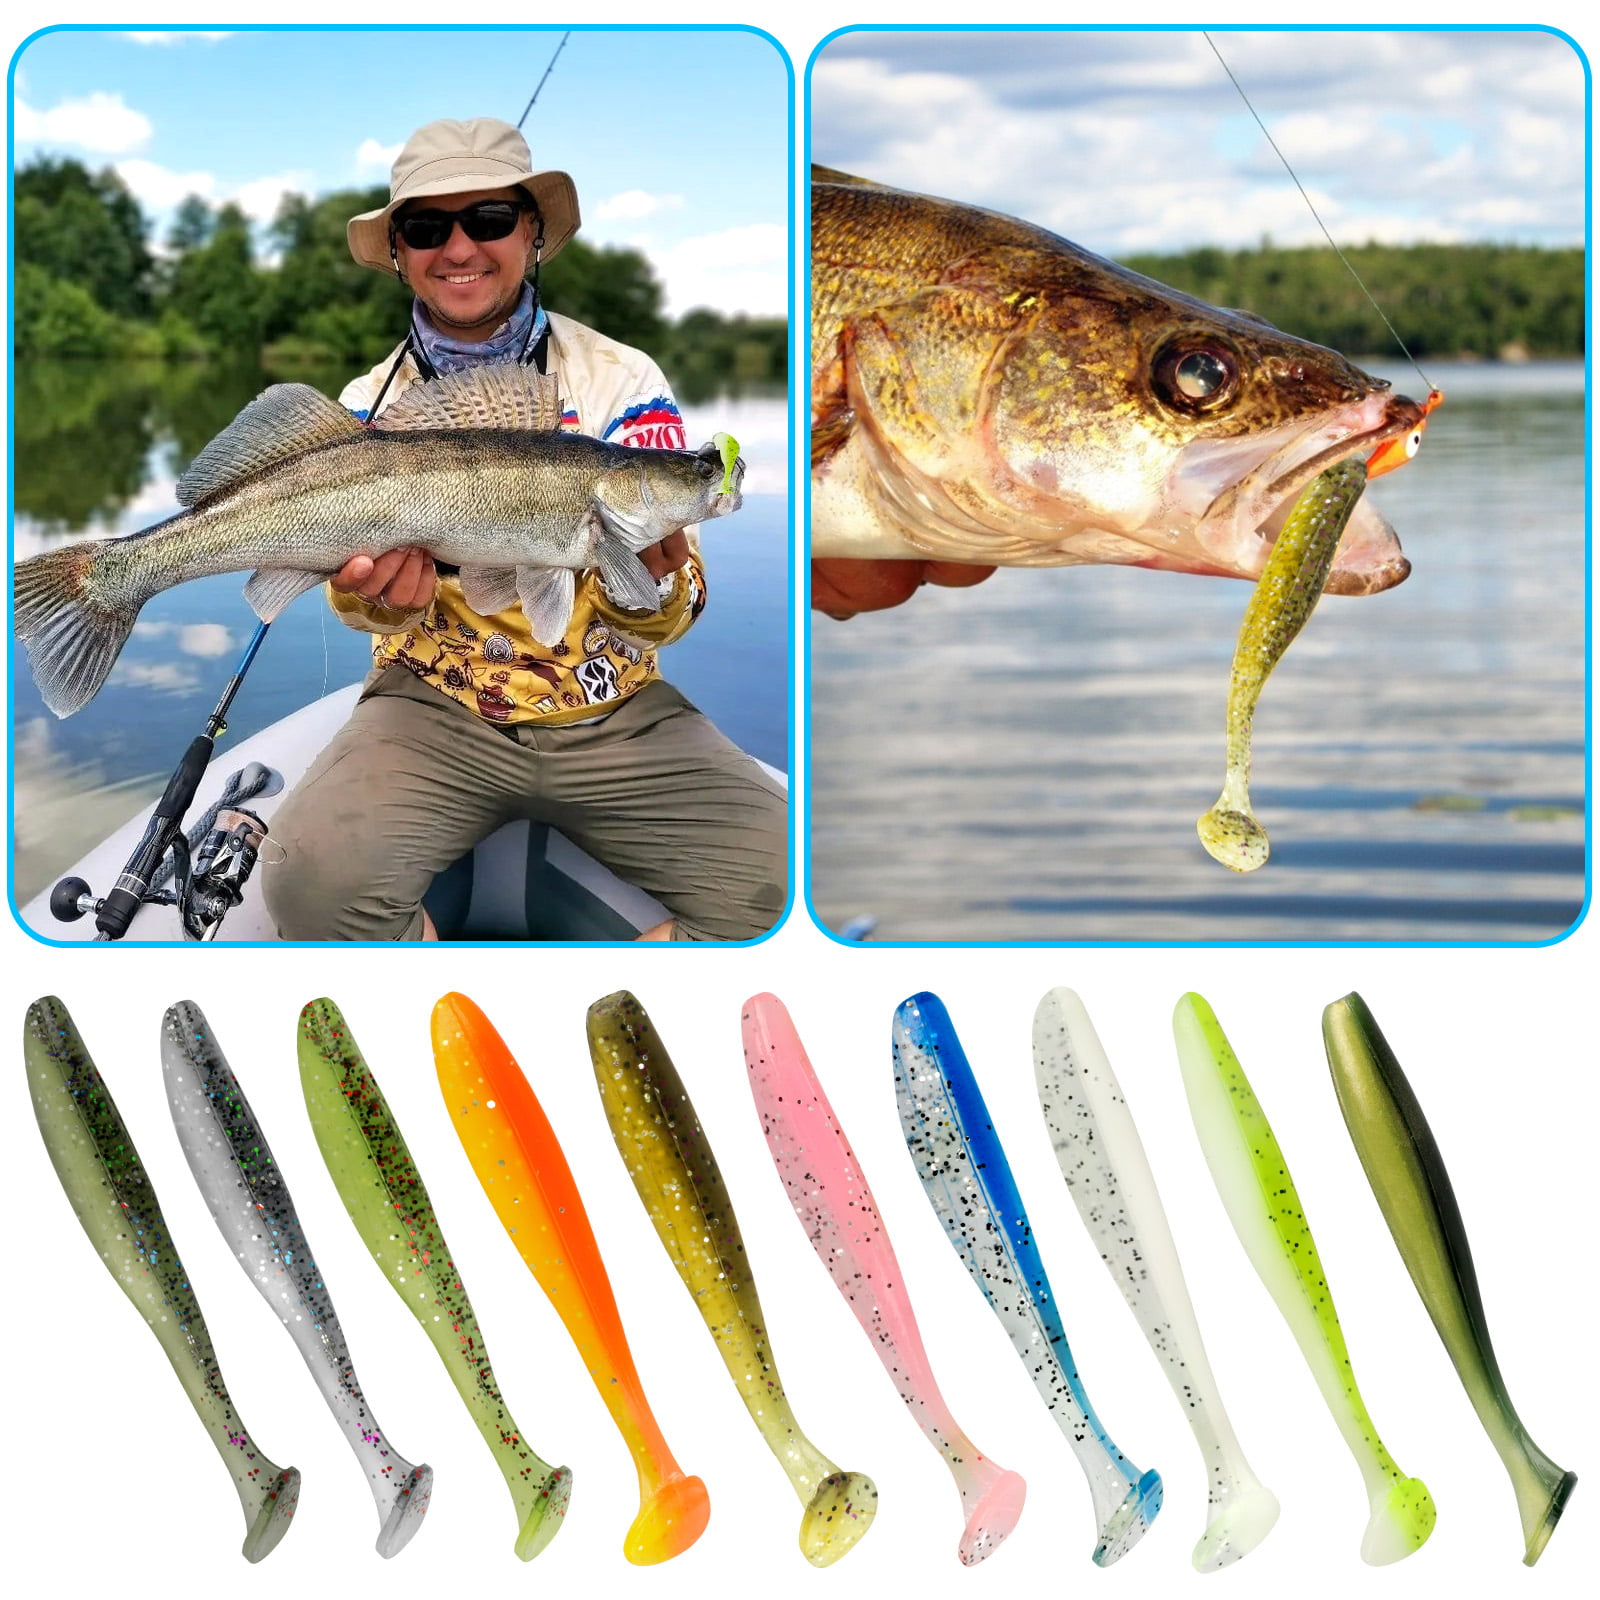 100/50PCS Soft Fishing Lures, TSV 2 T-tail Soft Baits Kit Stinger